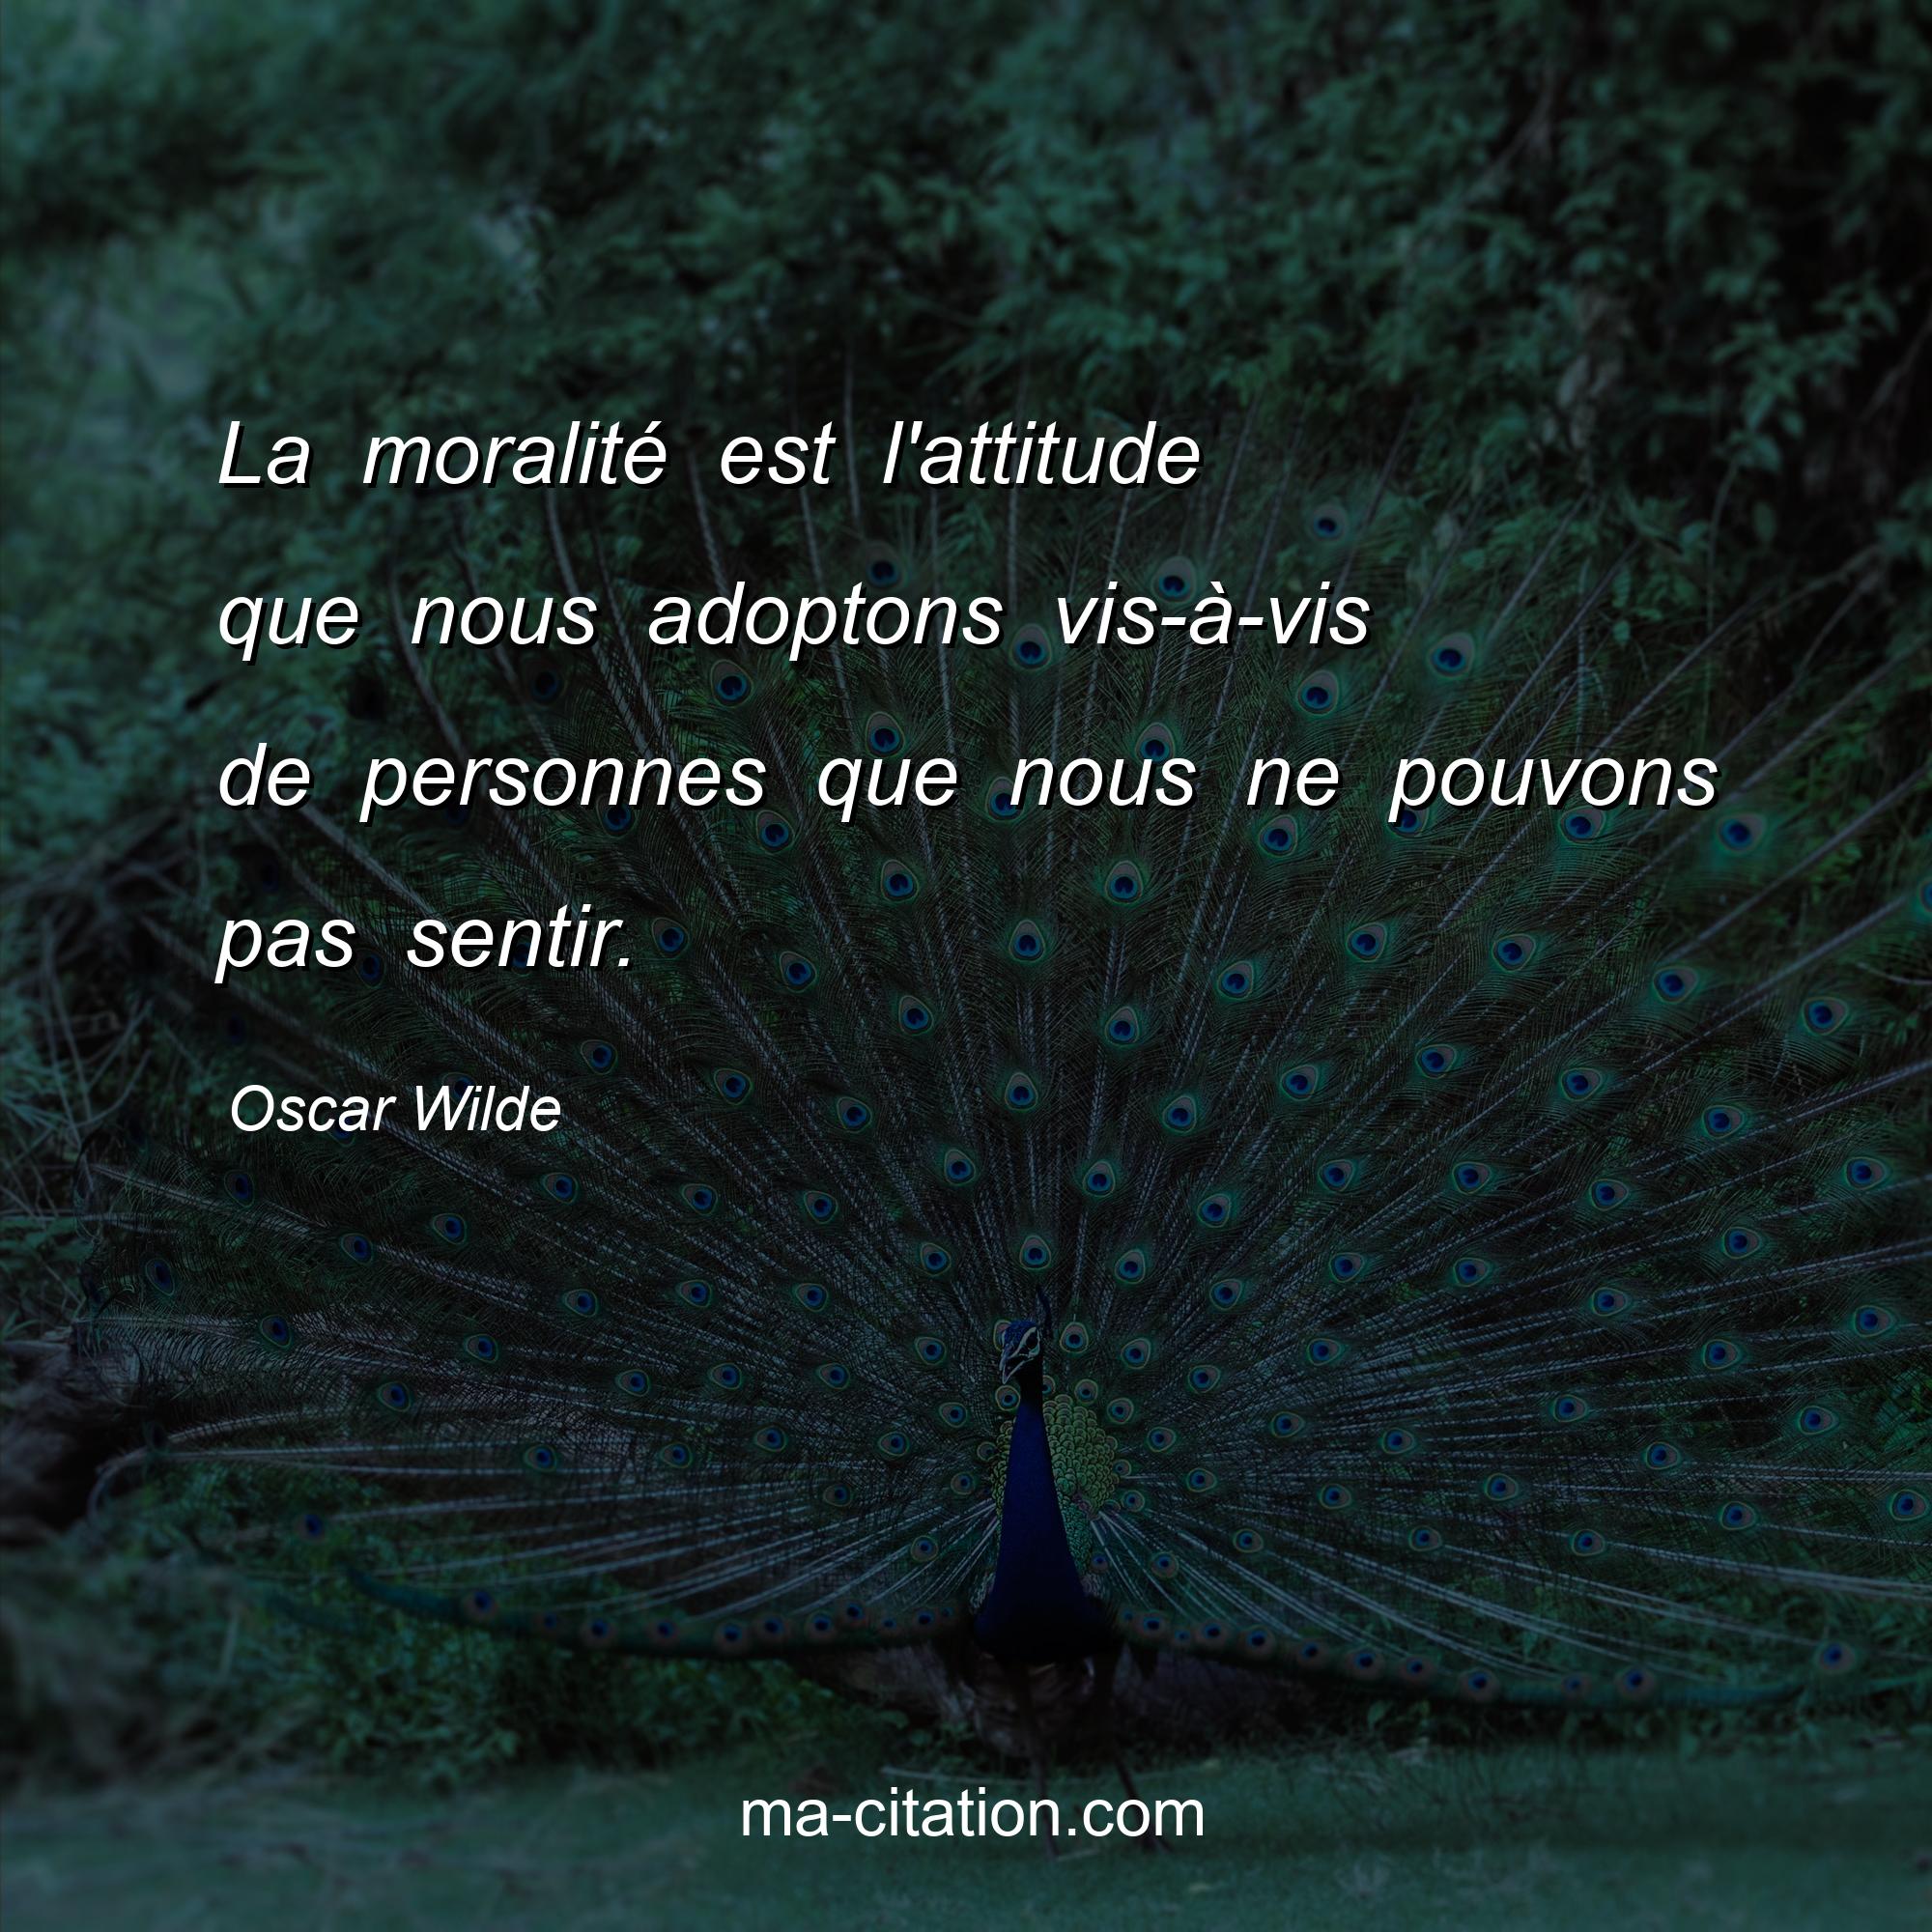 Oscar Wilde : La moralité est l'attitude que nous adoptons vis-à-vis de personnes que nous ne pouvons pas sentir.